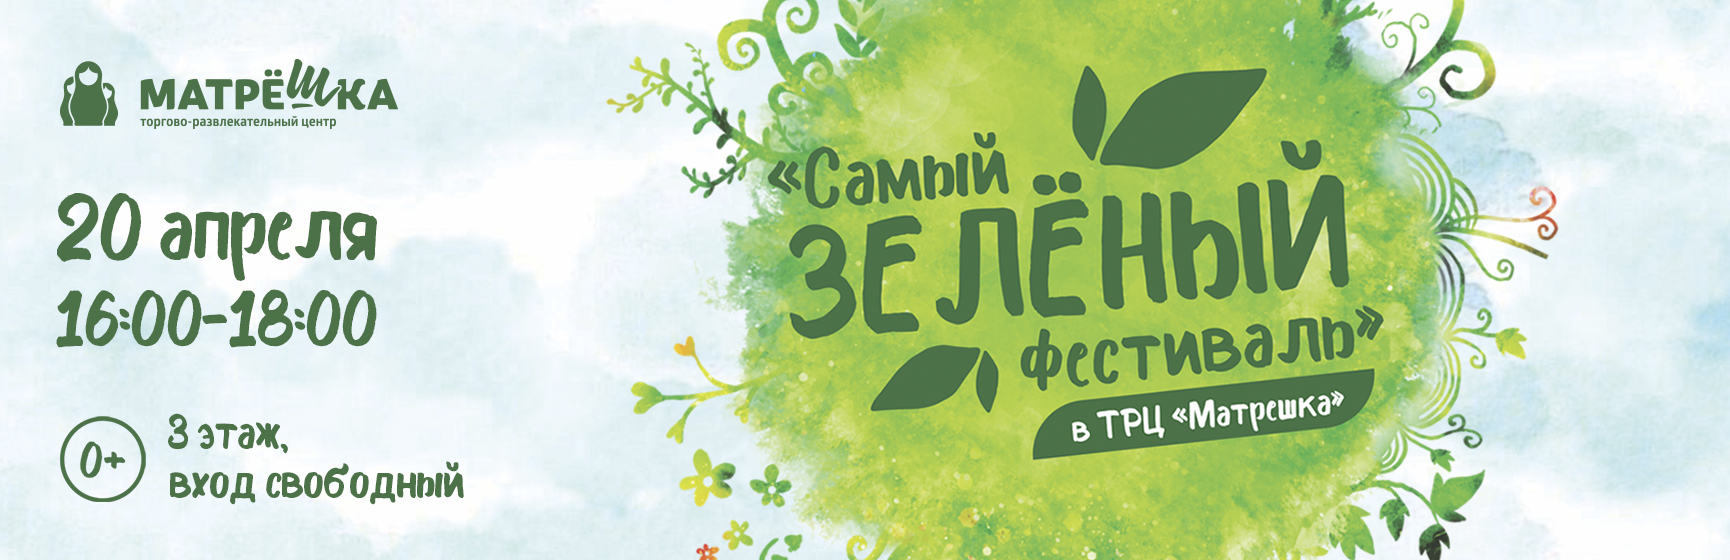 Зеленый фестиваль